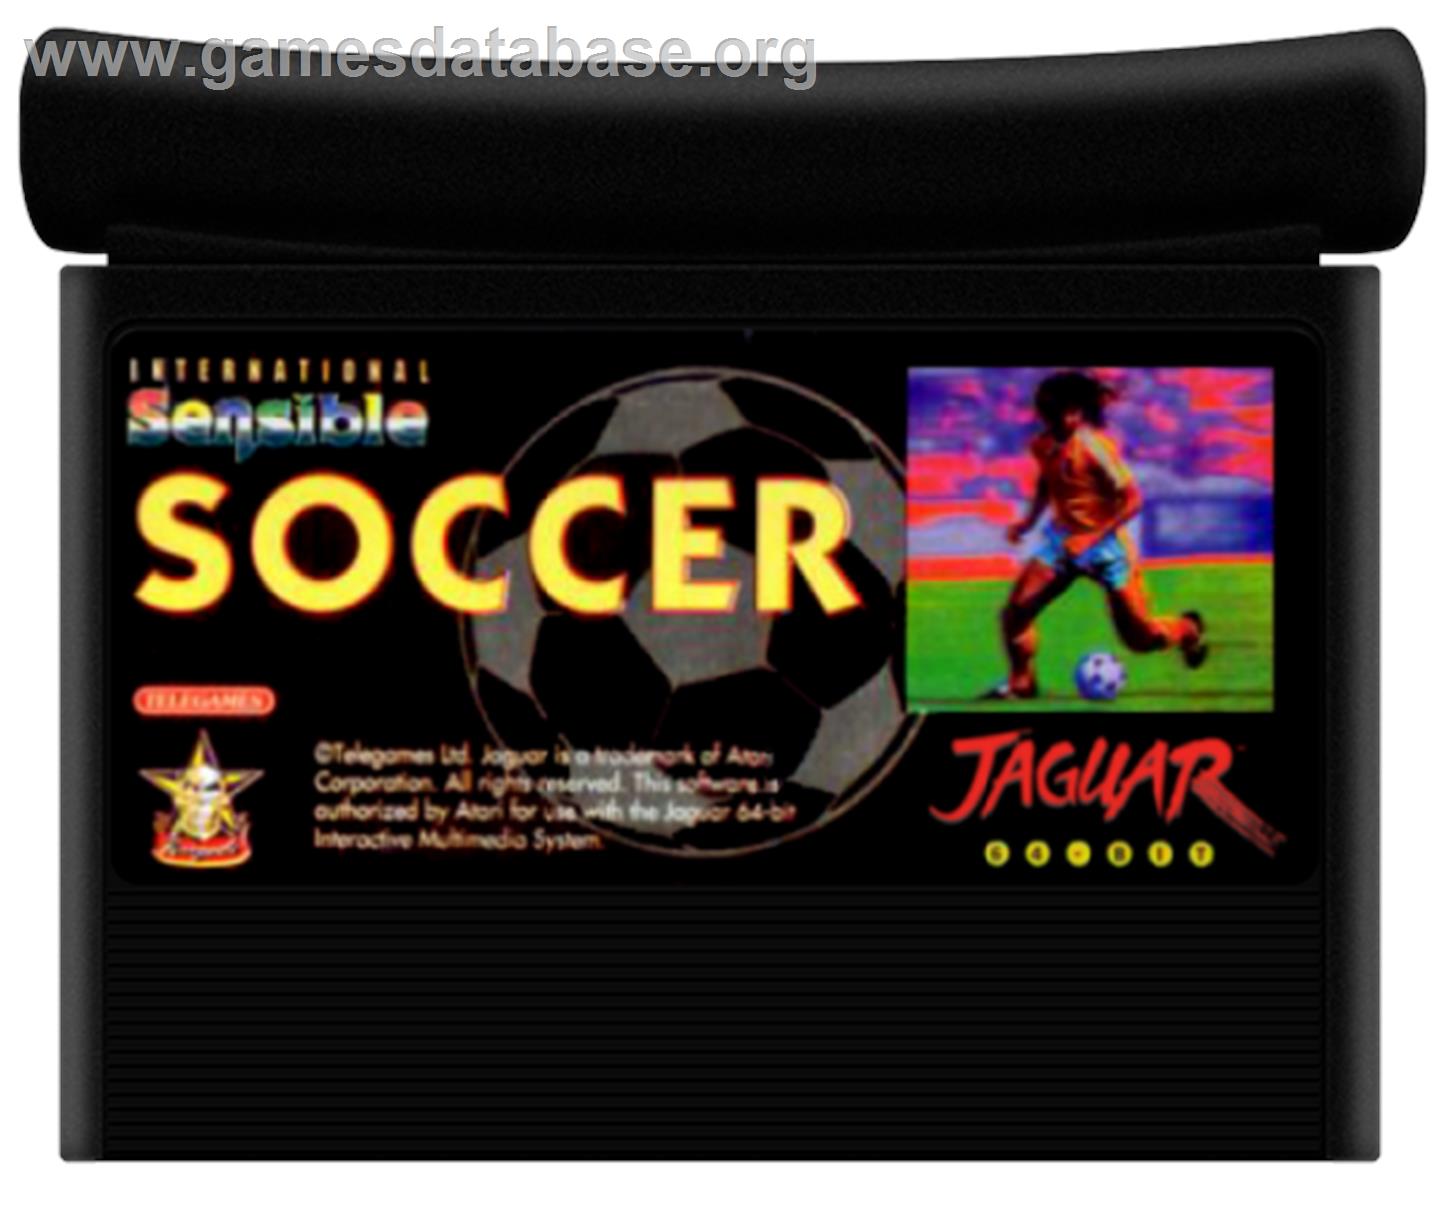 Sensible Soccer: International Edition - Atari Jaguar - Artwork - Cartridge